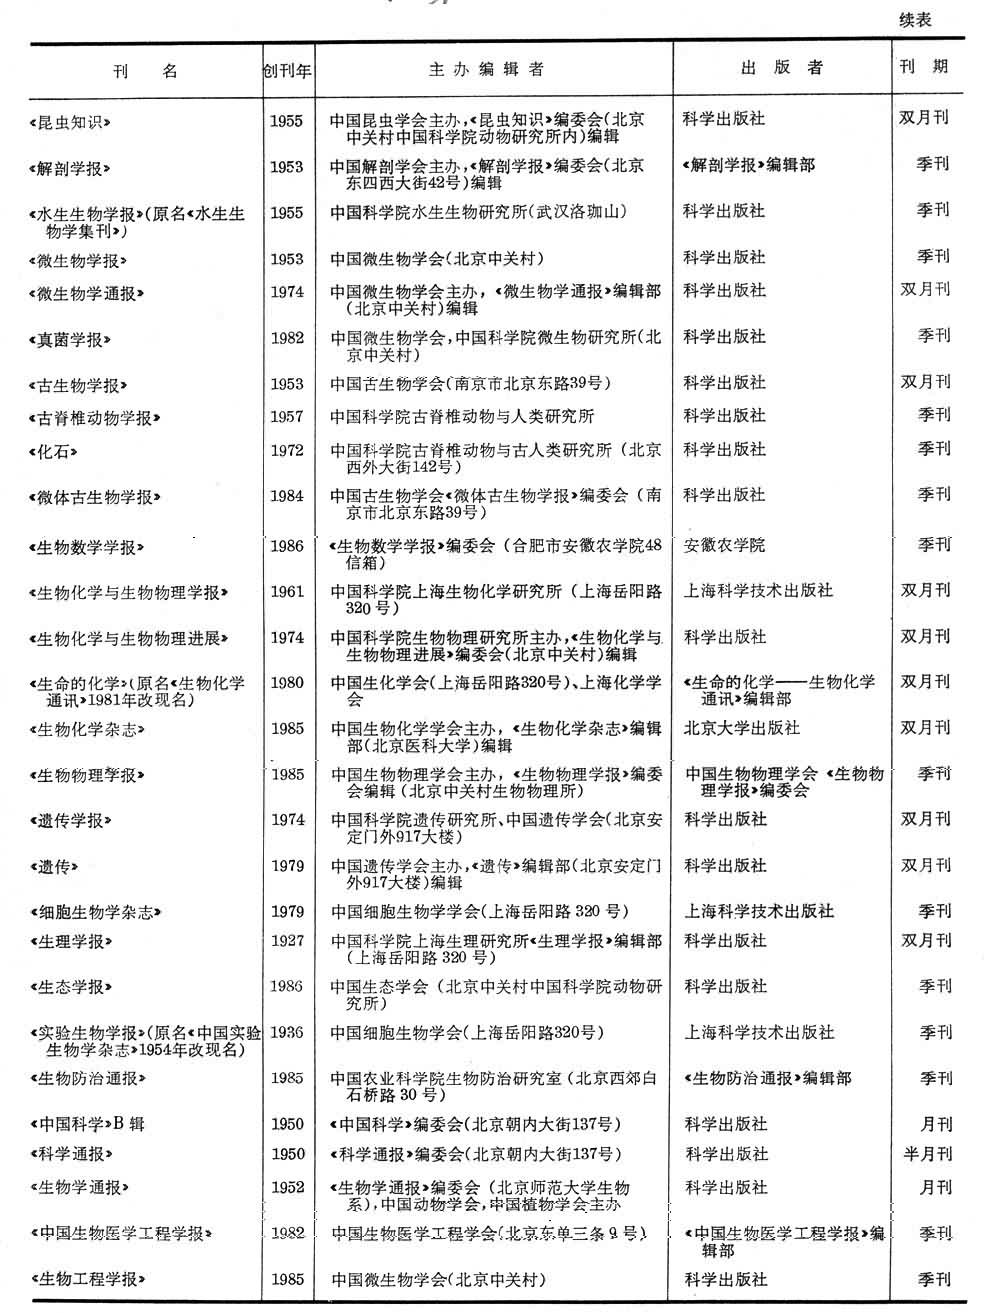 中国刊载生物学文章的部分刊物续表